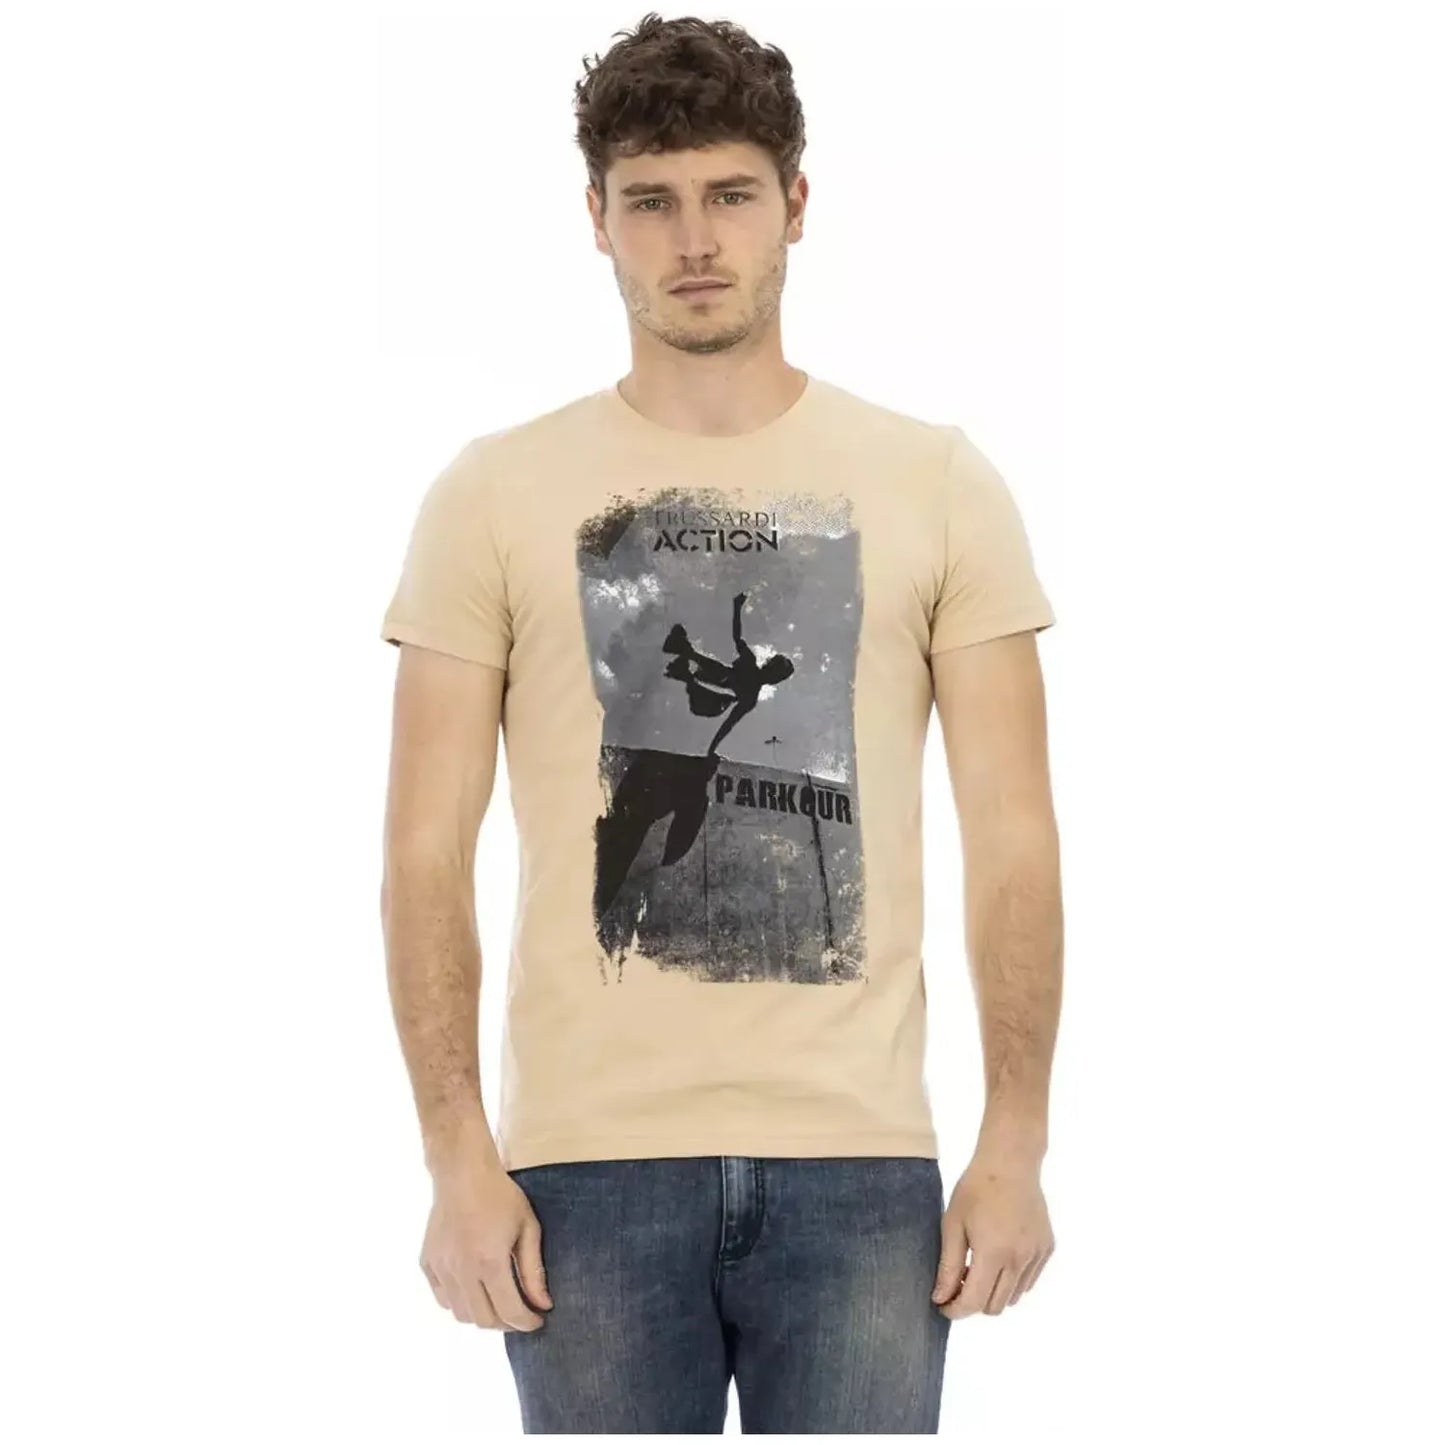 Trussardi Action Elegant Beige Round Neck Tee with Chic Print beige-cotton-t-shirt-2 product-22897-2029833384-25-13dd4110-6c2.webp